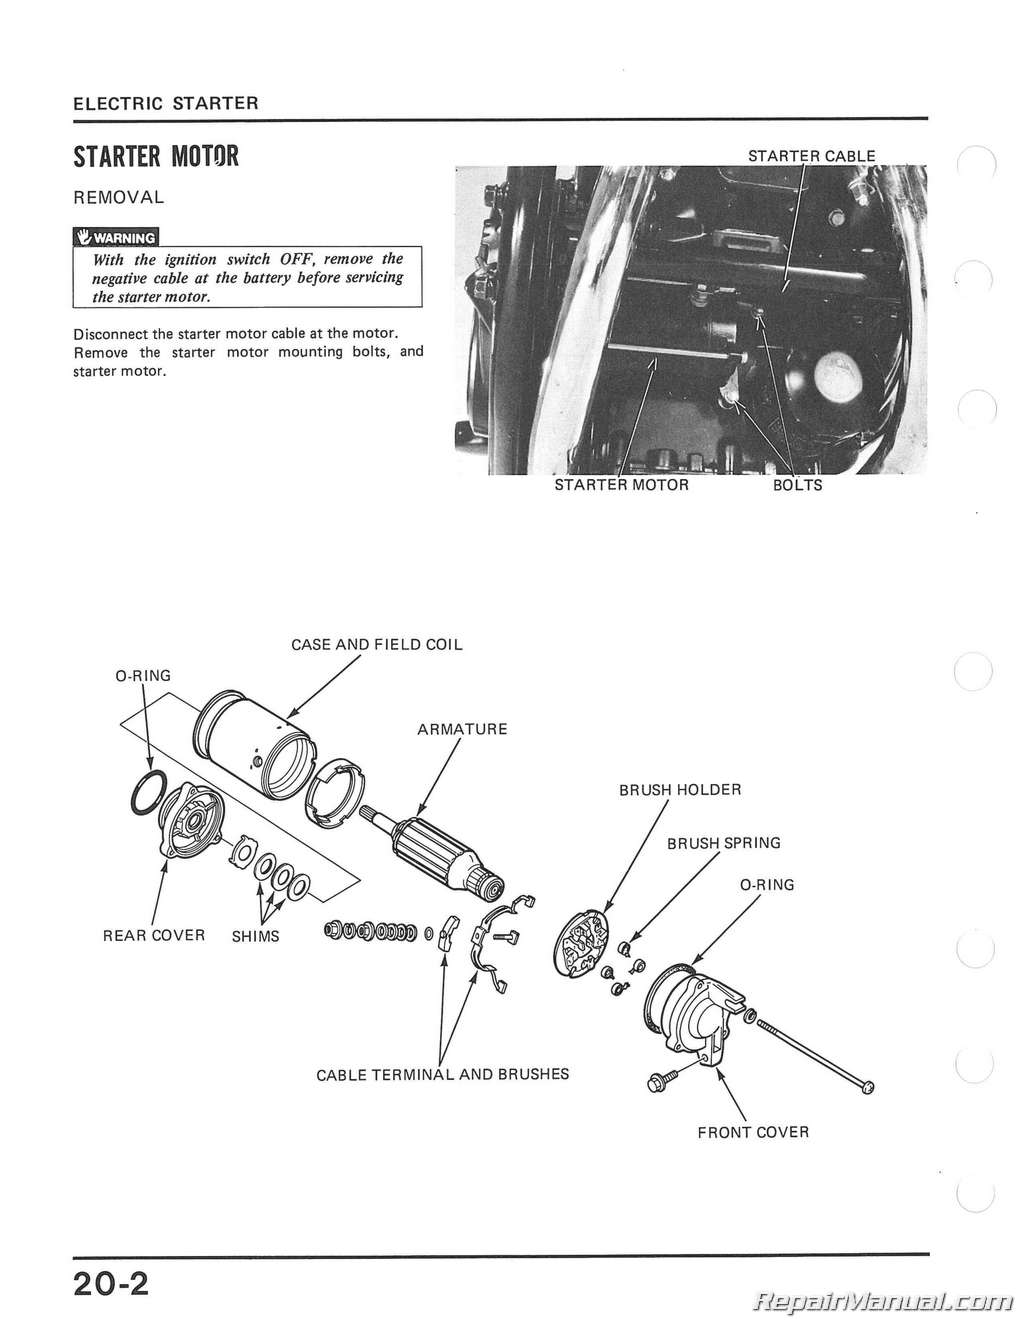 1984 Honda magna vf700c owners manual #1